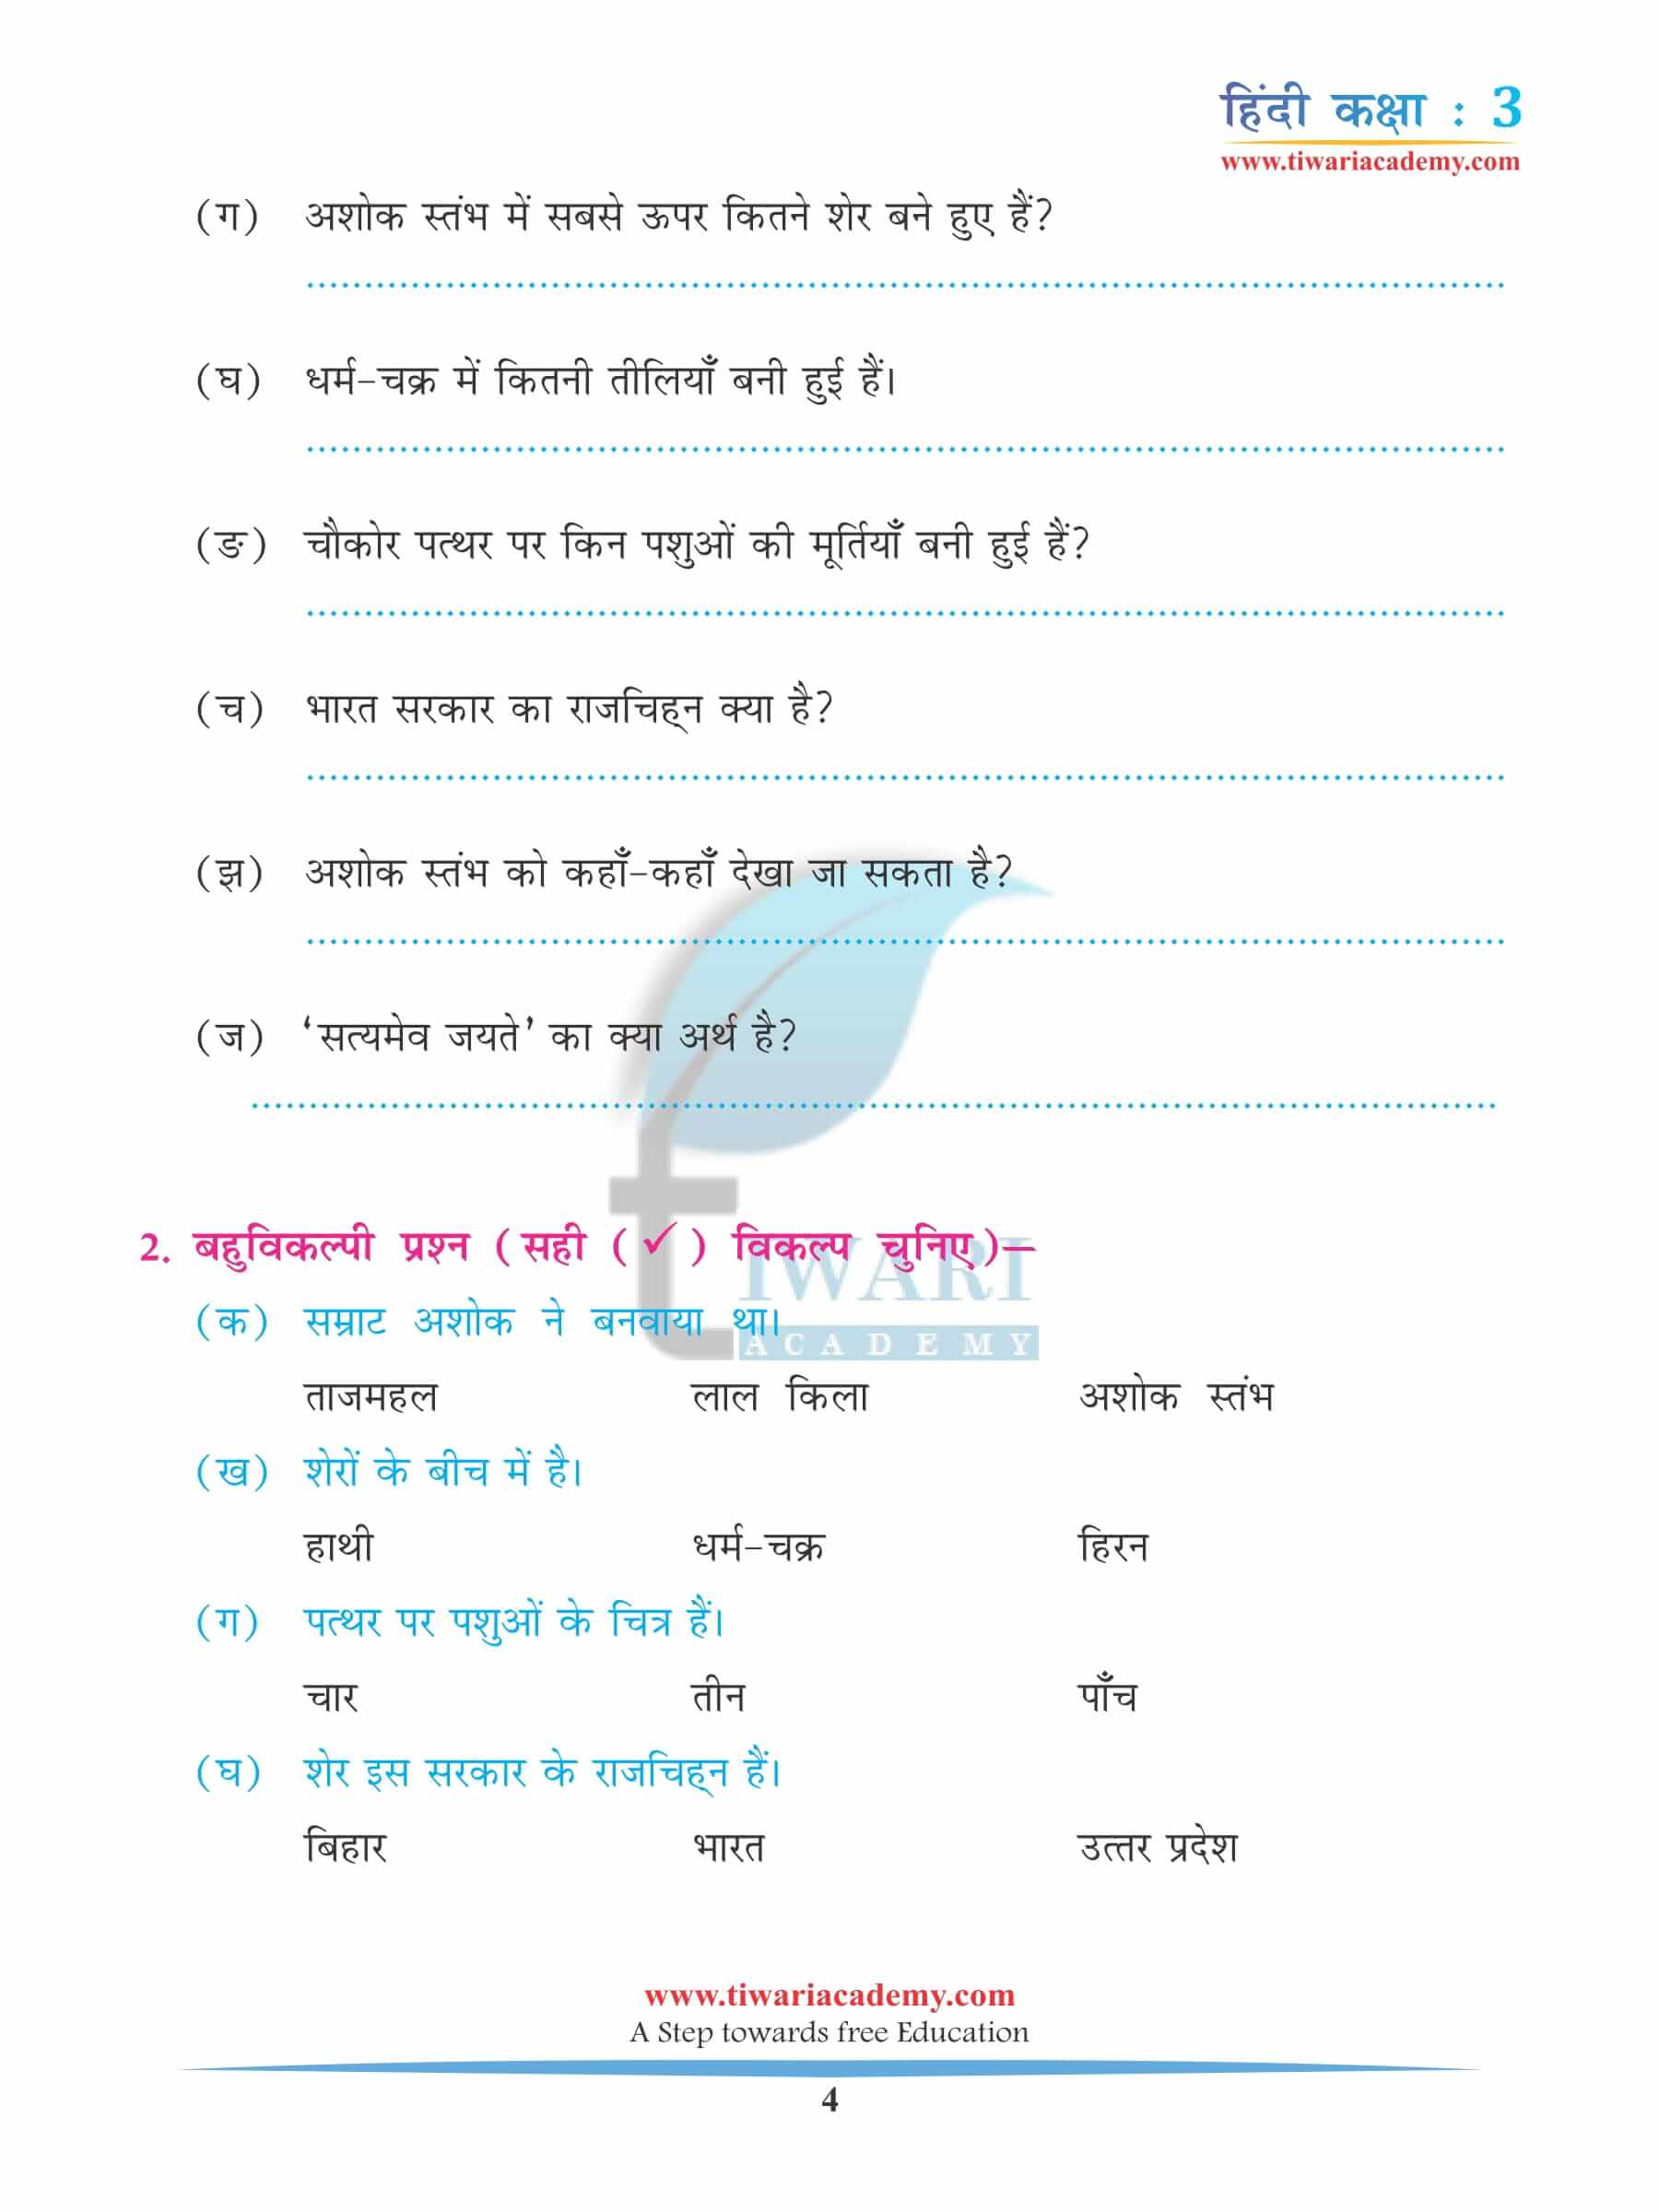 कक्षा 3 हिंदी अध्याय 2 अभ्यास की किताब